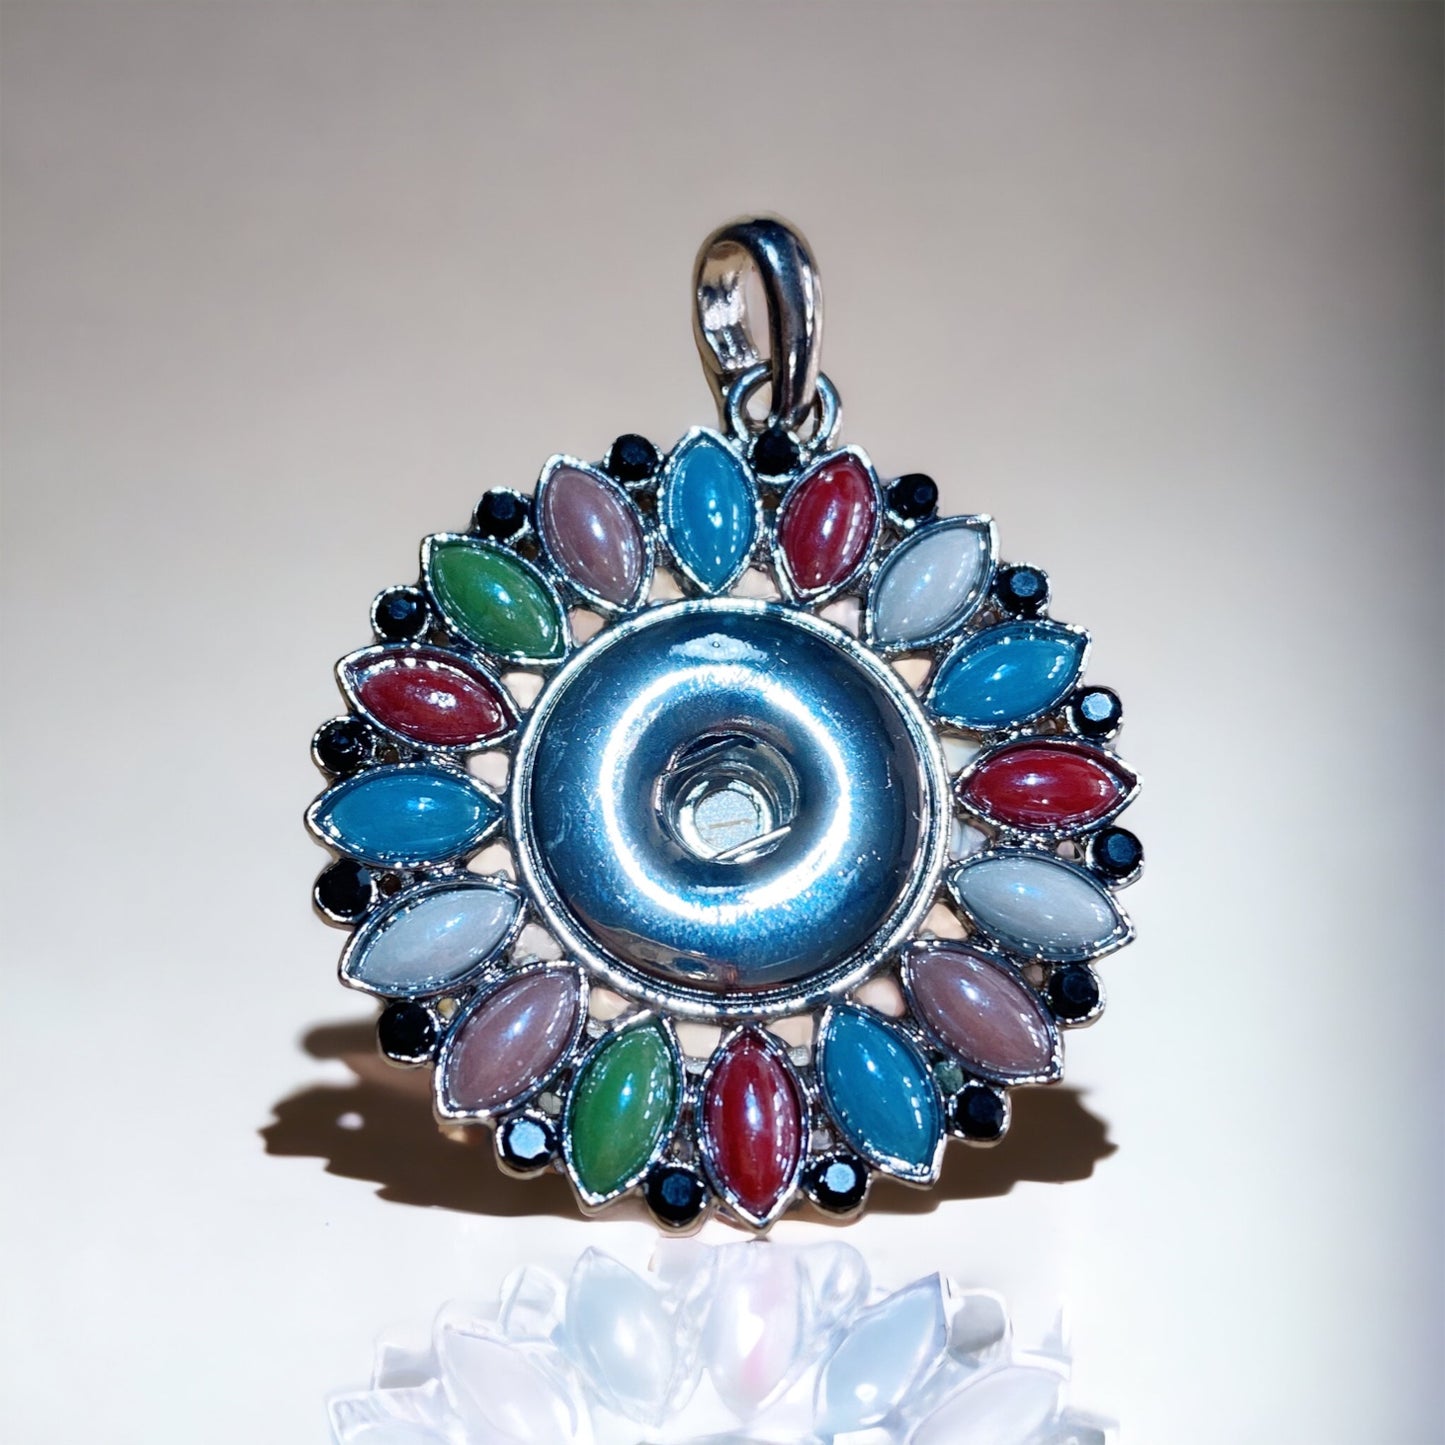 Snap jewelry Necklace Pendant/ Dije o colgante para botones intercambiables con pedrería multicolor